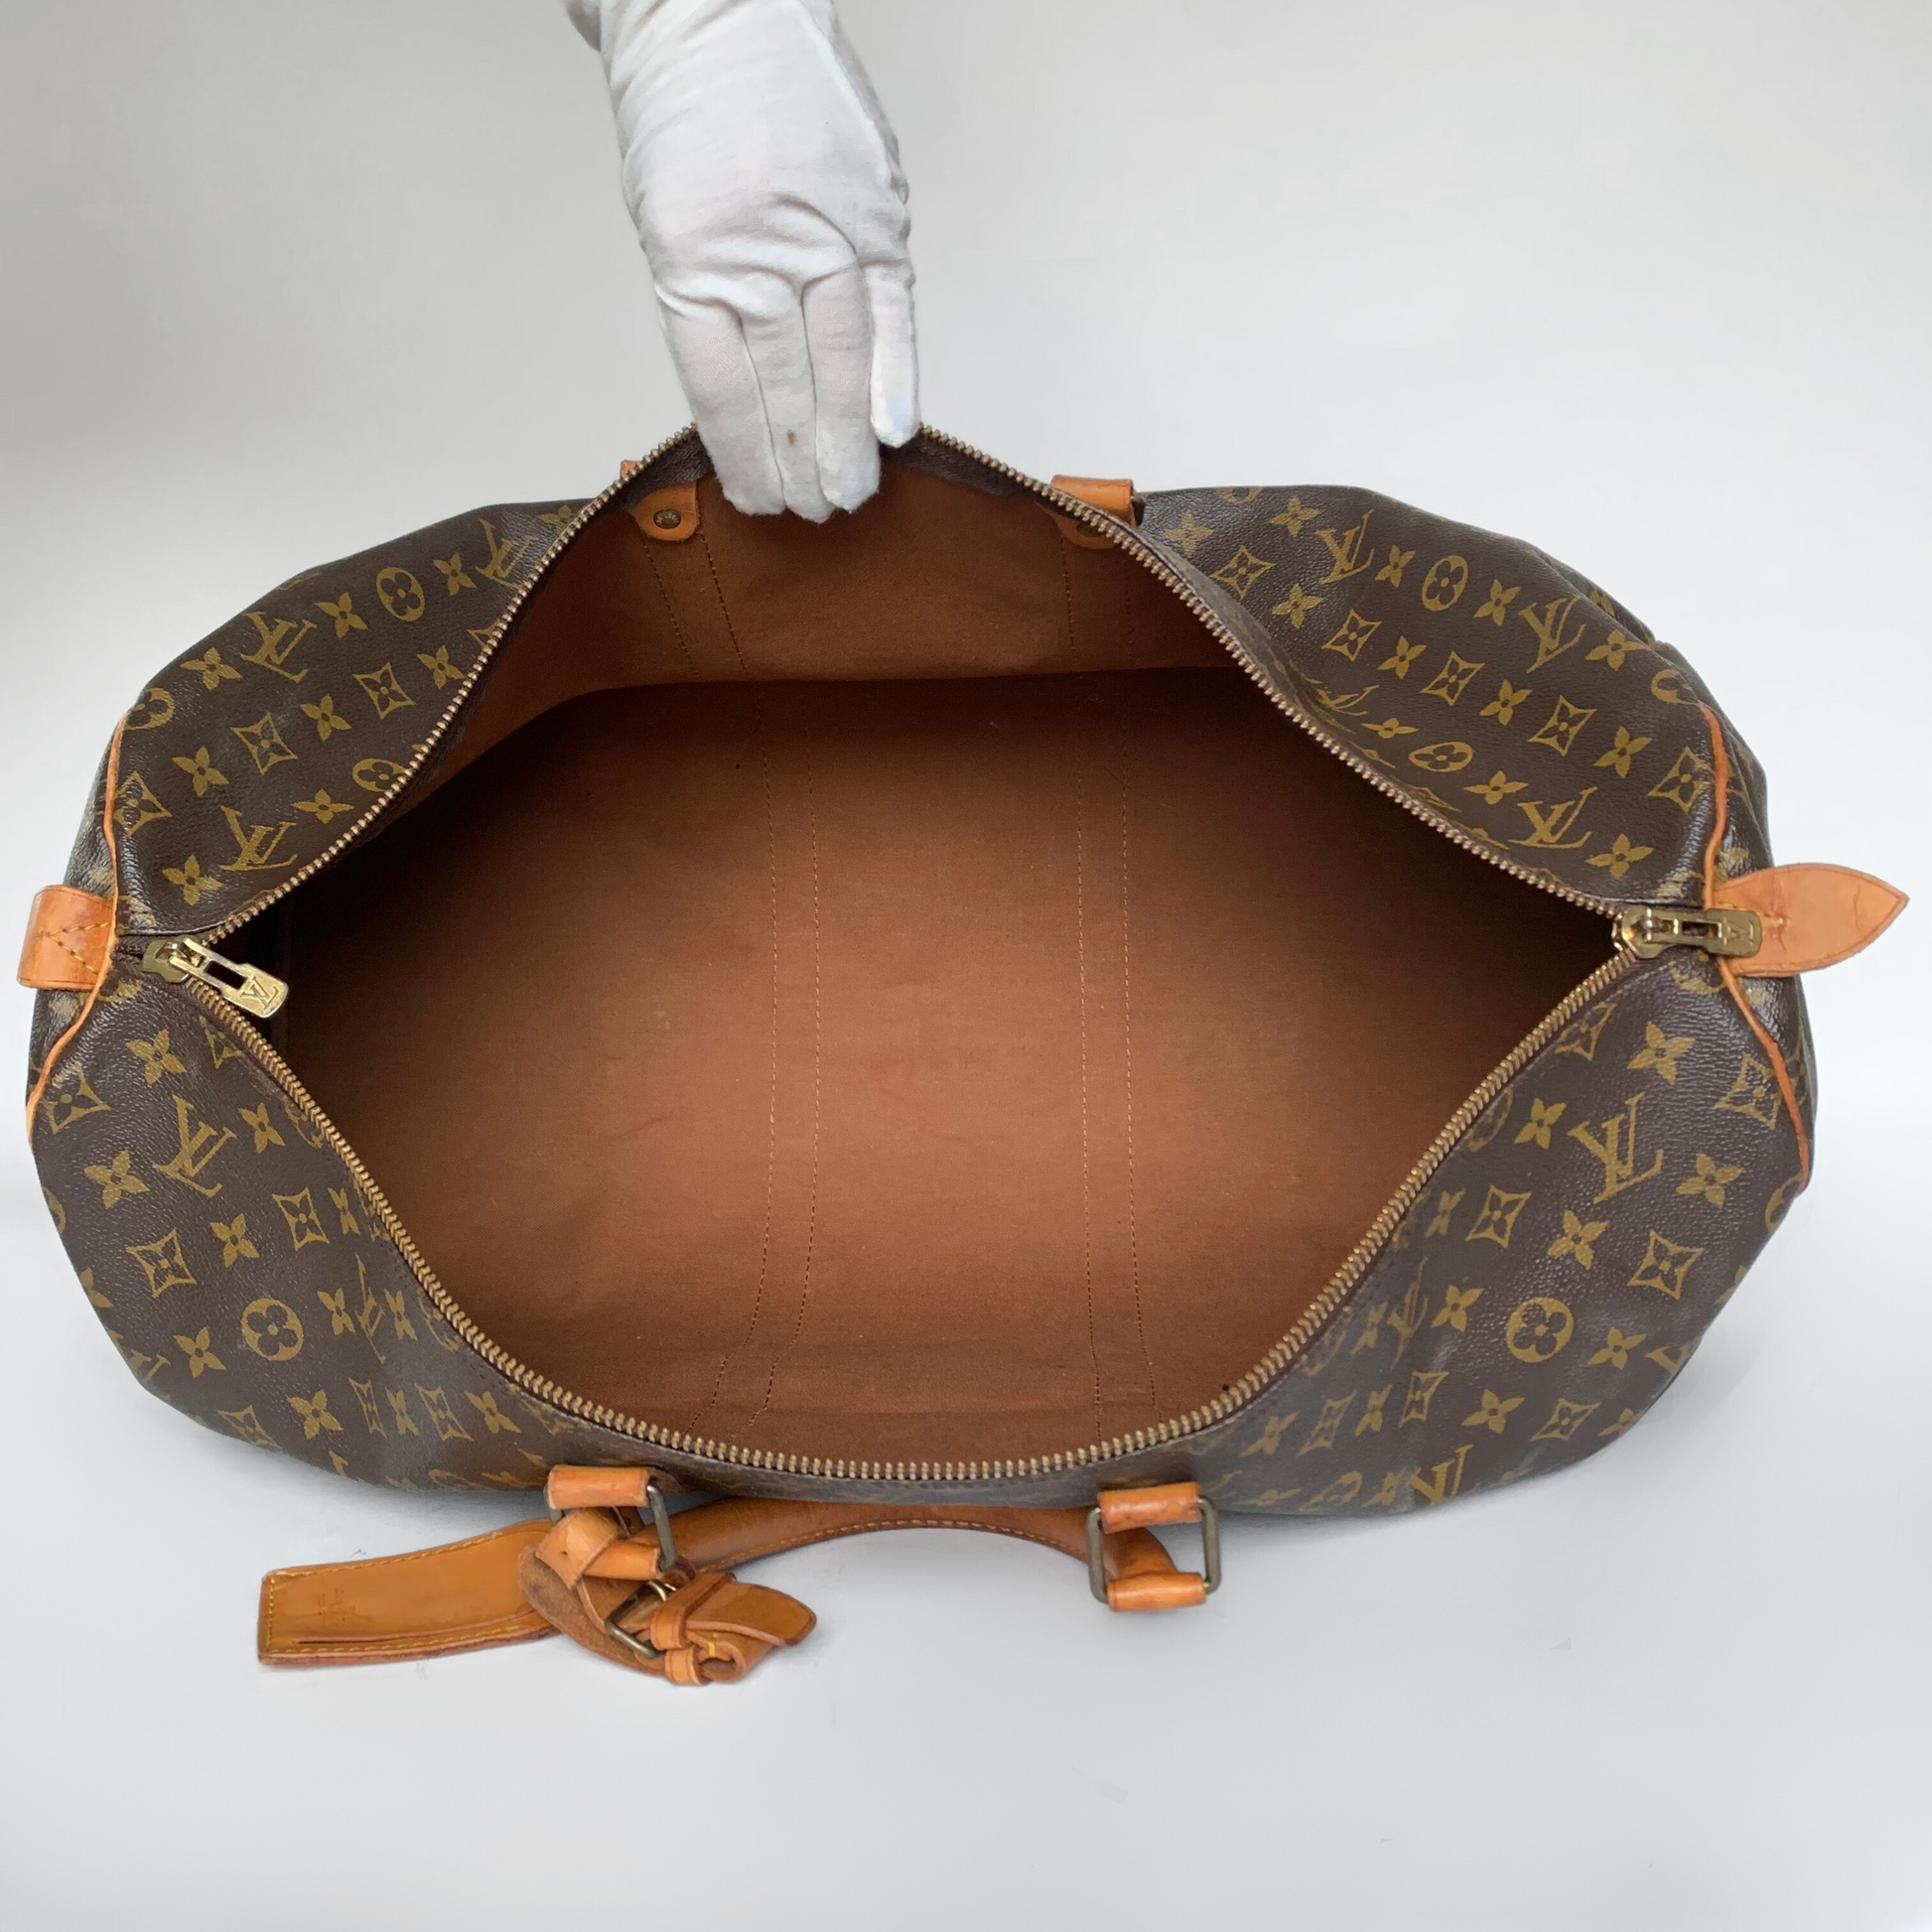 Vintage LV St. Germain  Bags, Luxury bags, Louis vuitton